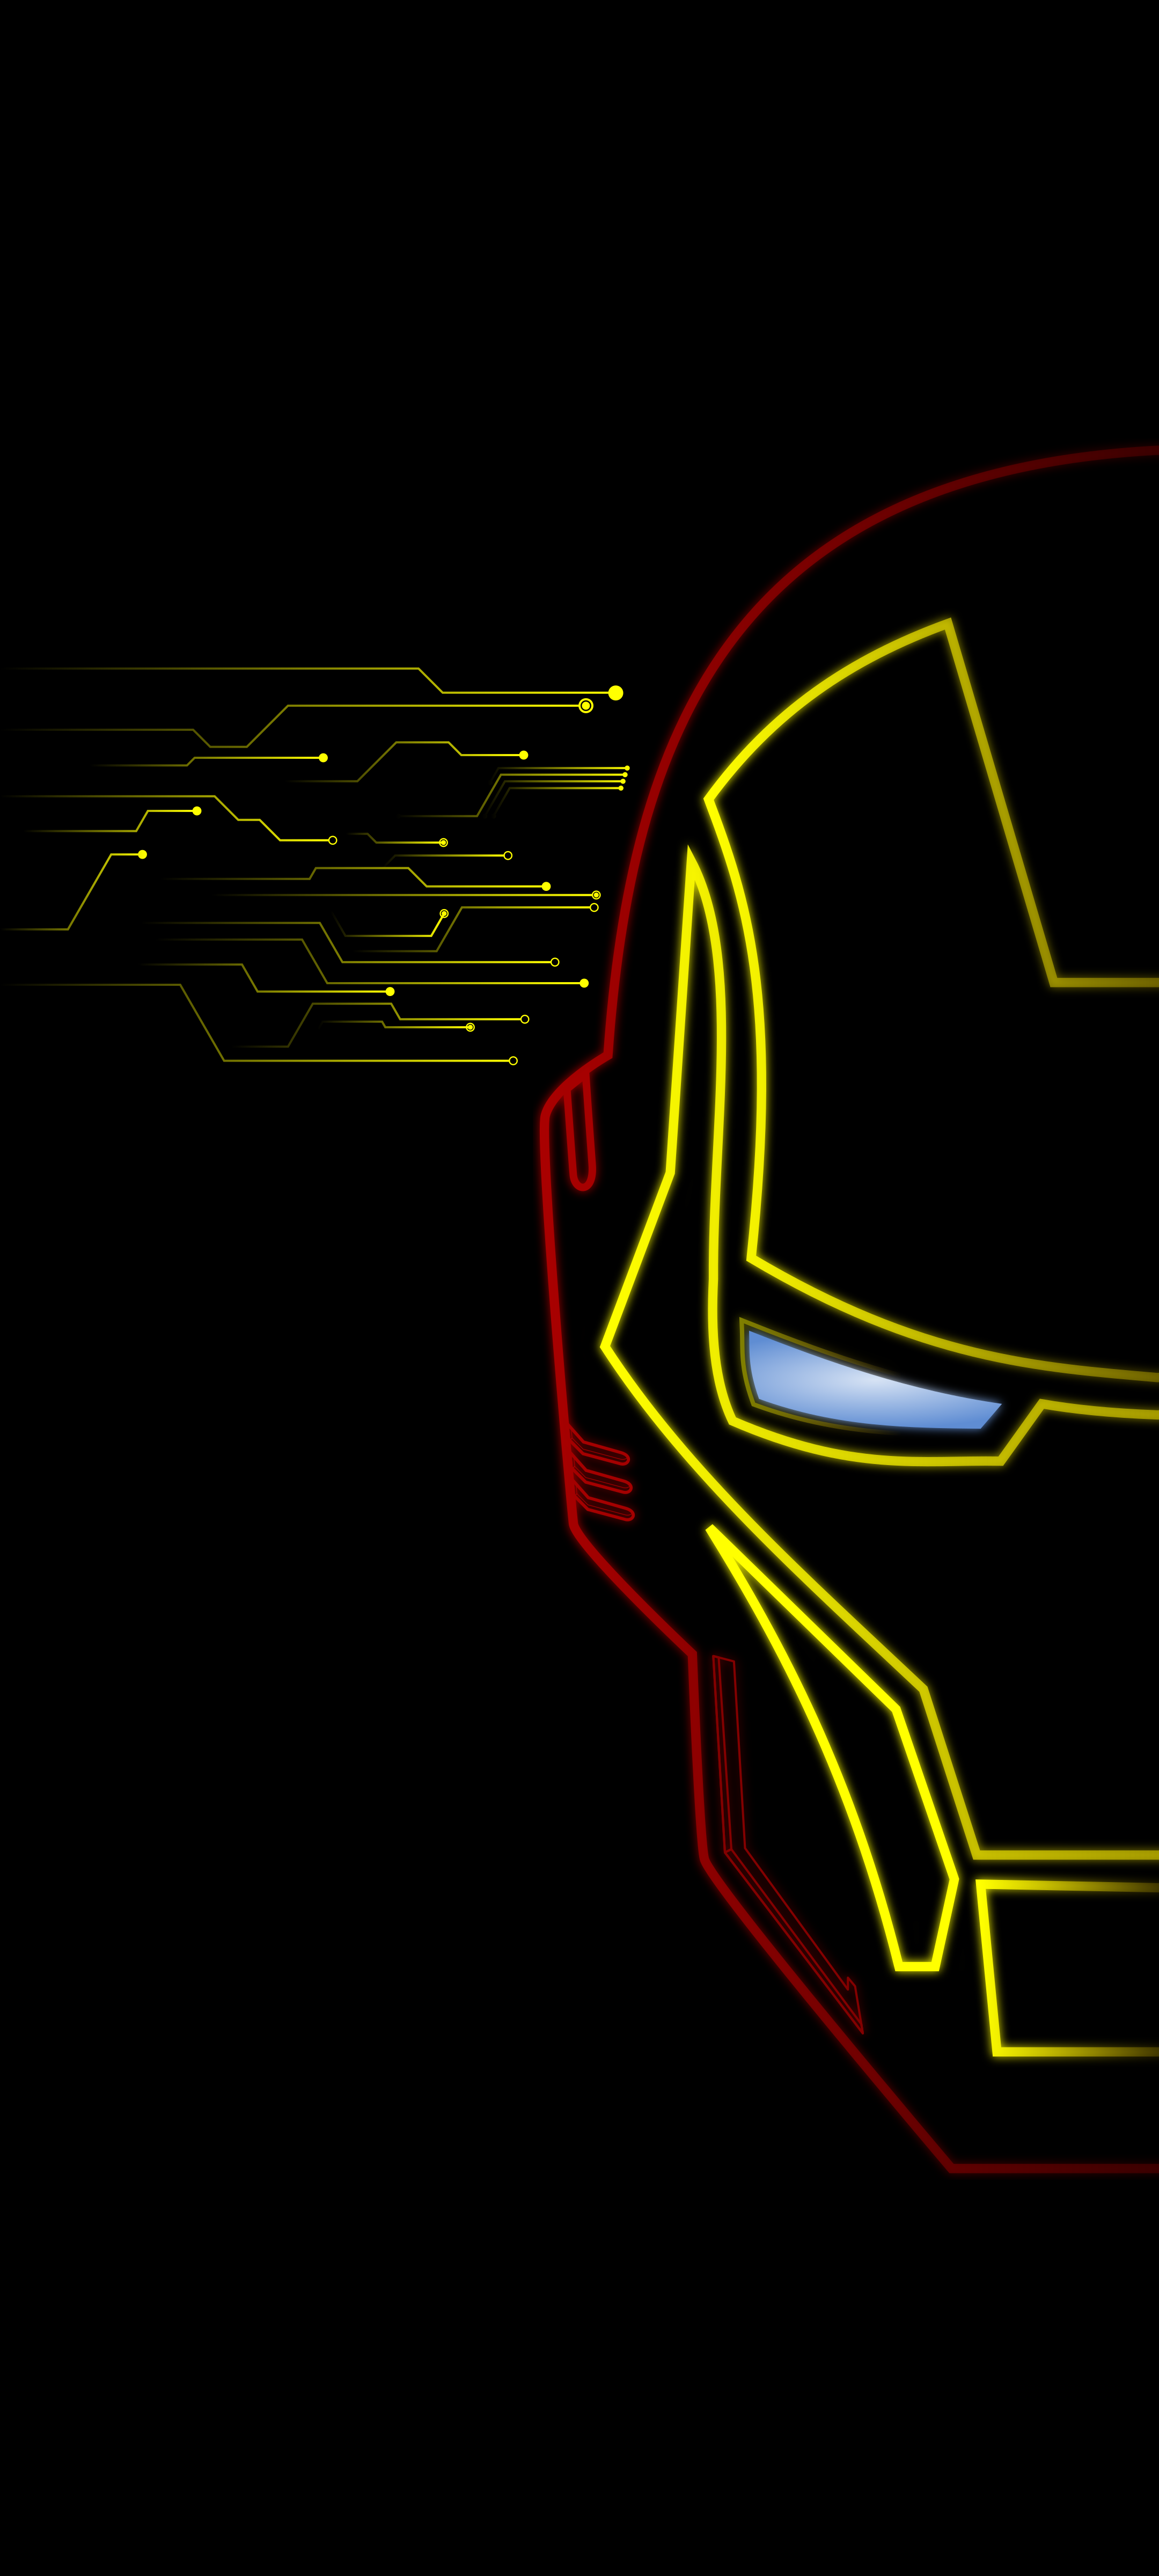 Iron Man's neon icon